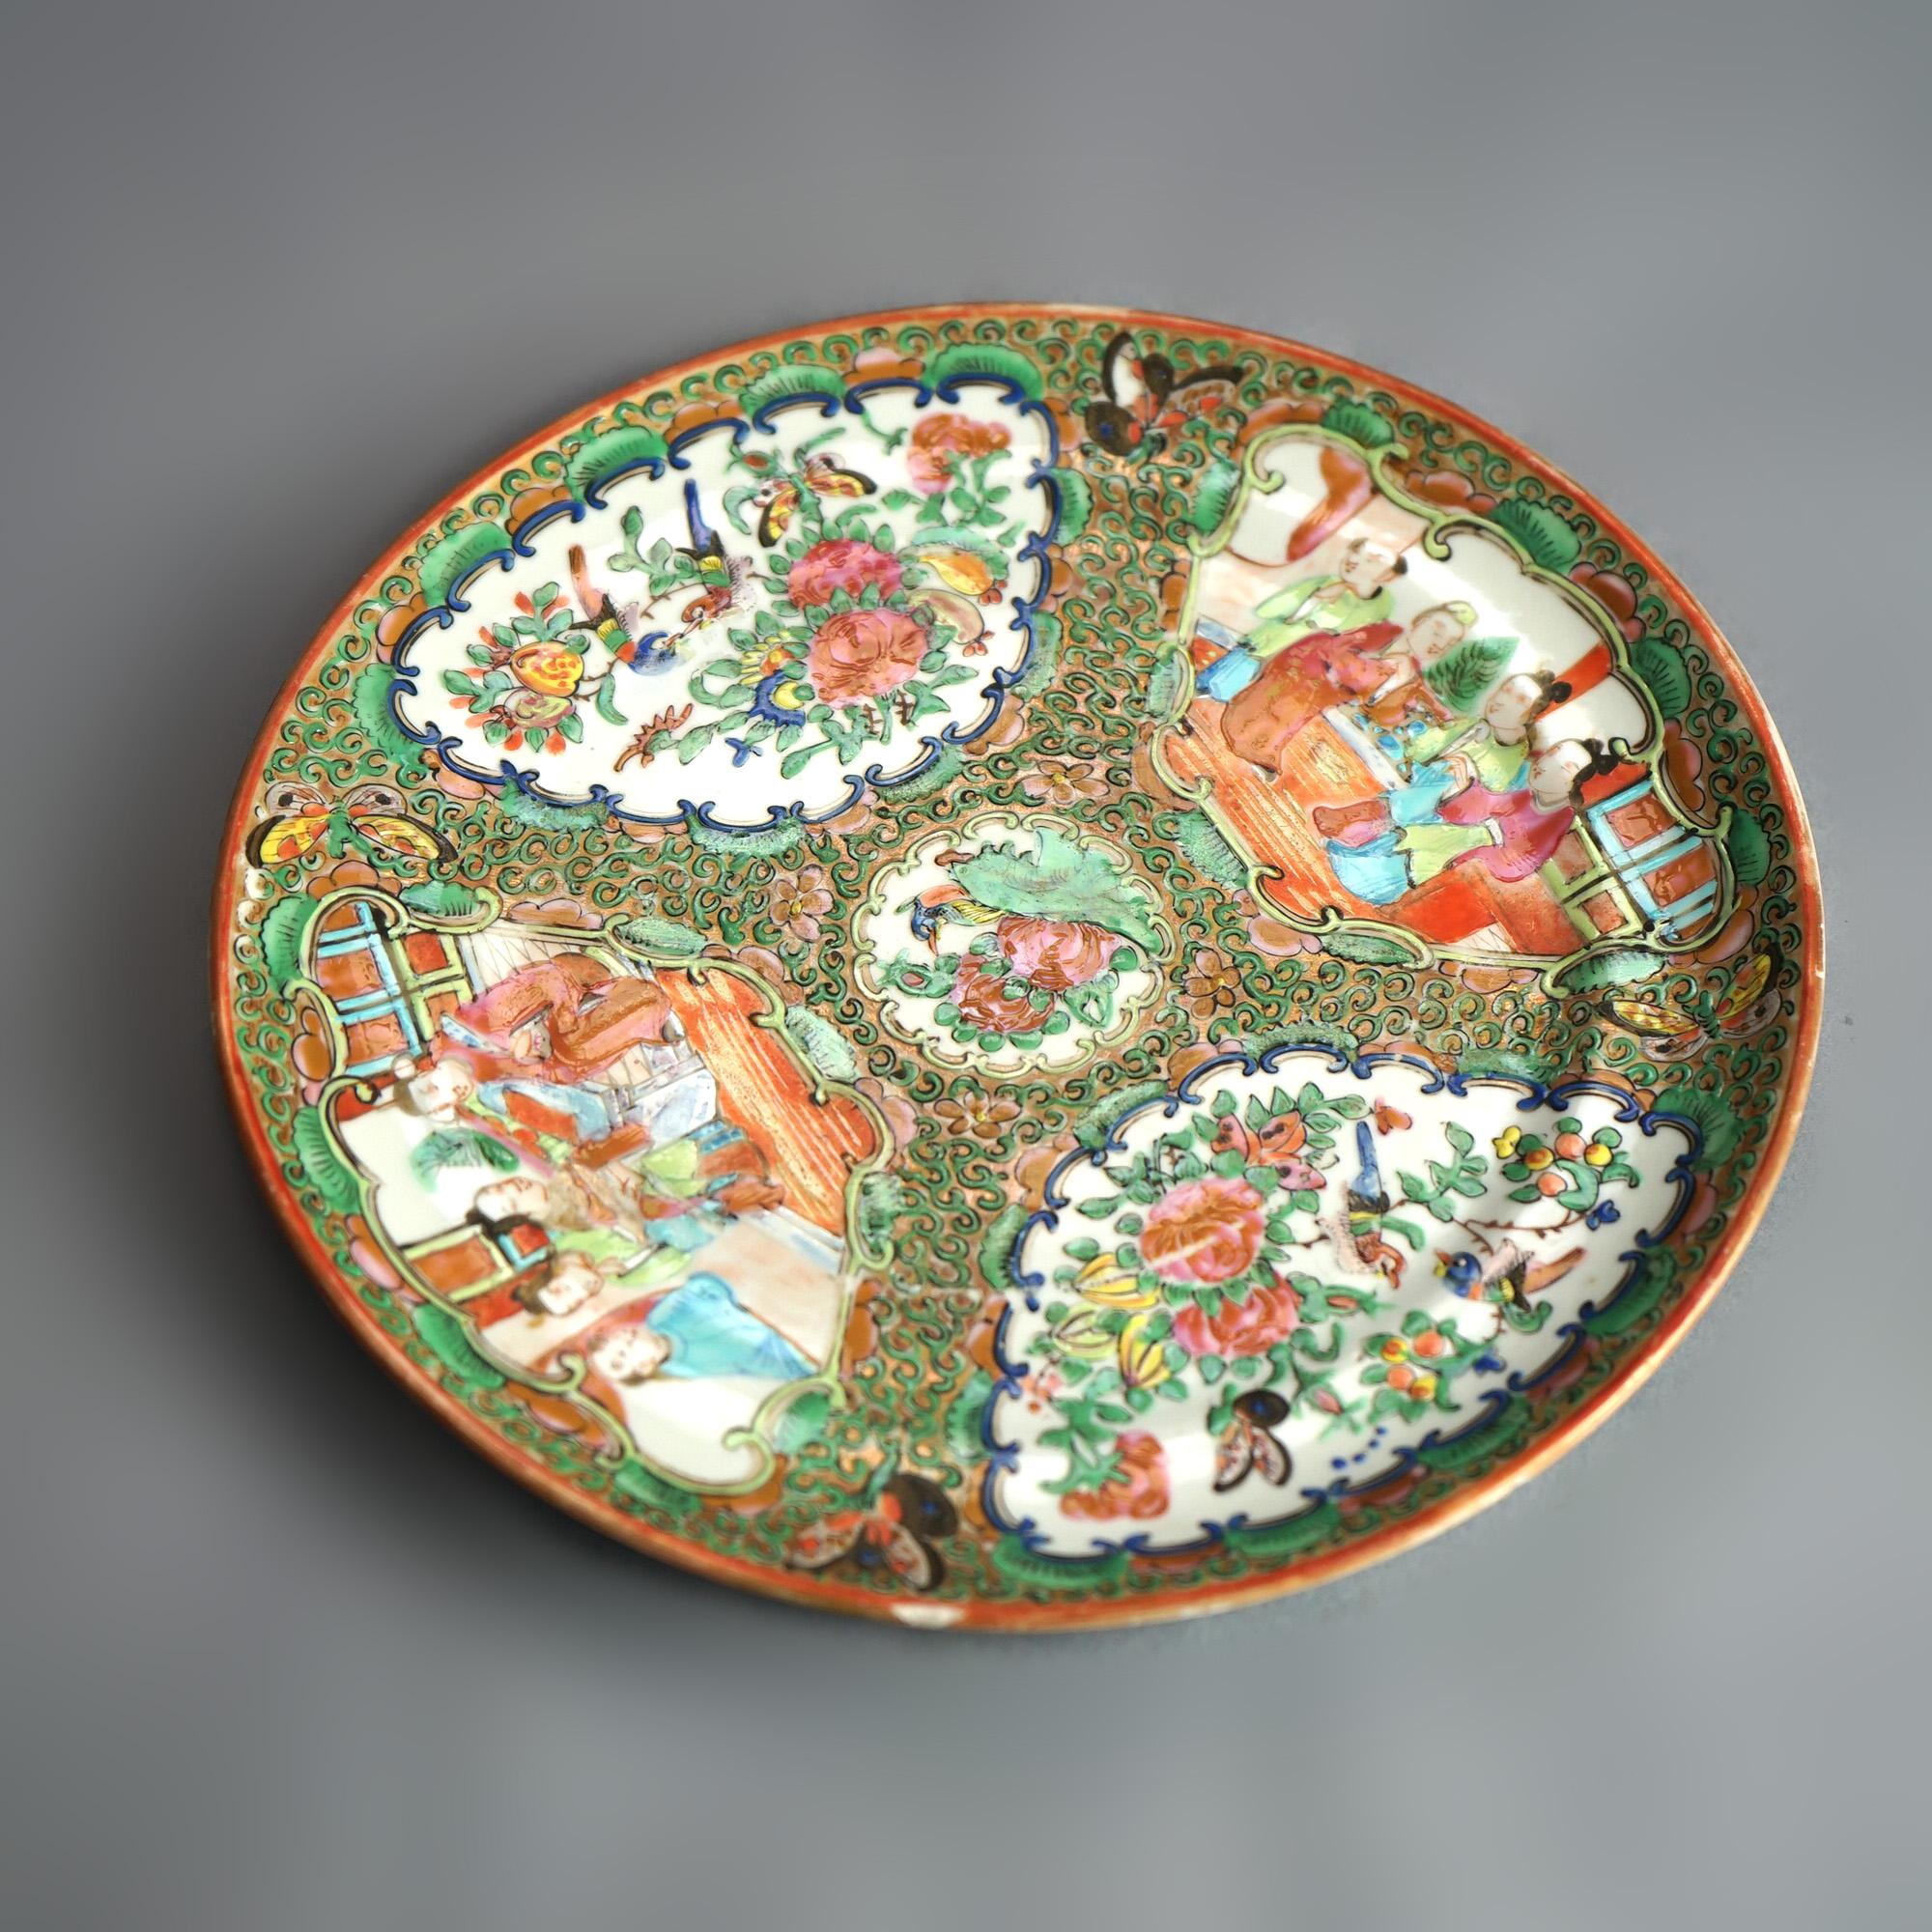 Antike chinesische Rose Medaillon Porzellanteller mit Reserven mit Gärten & Genre Szenen C1900

Maße - .75 